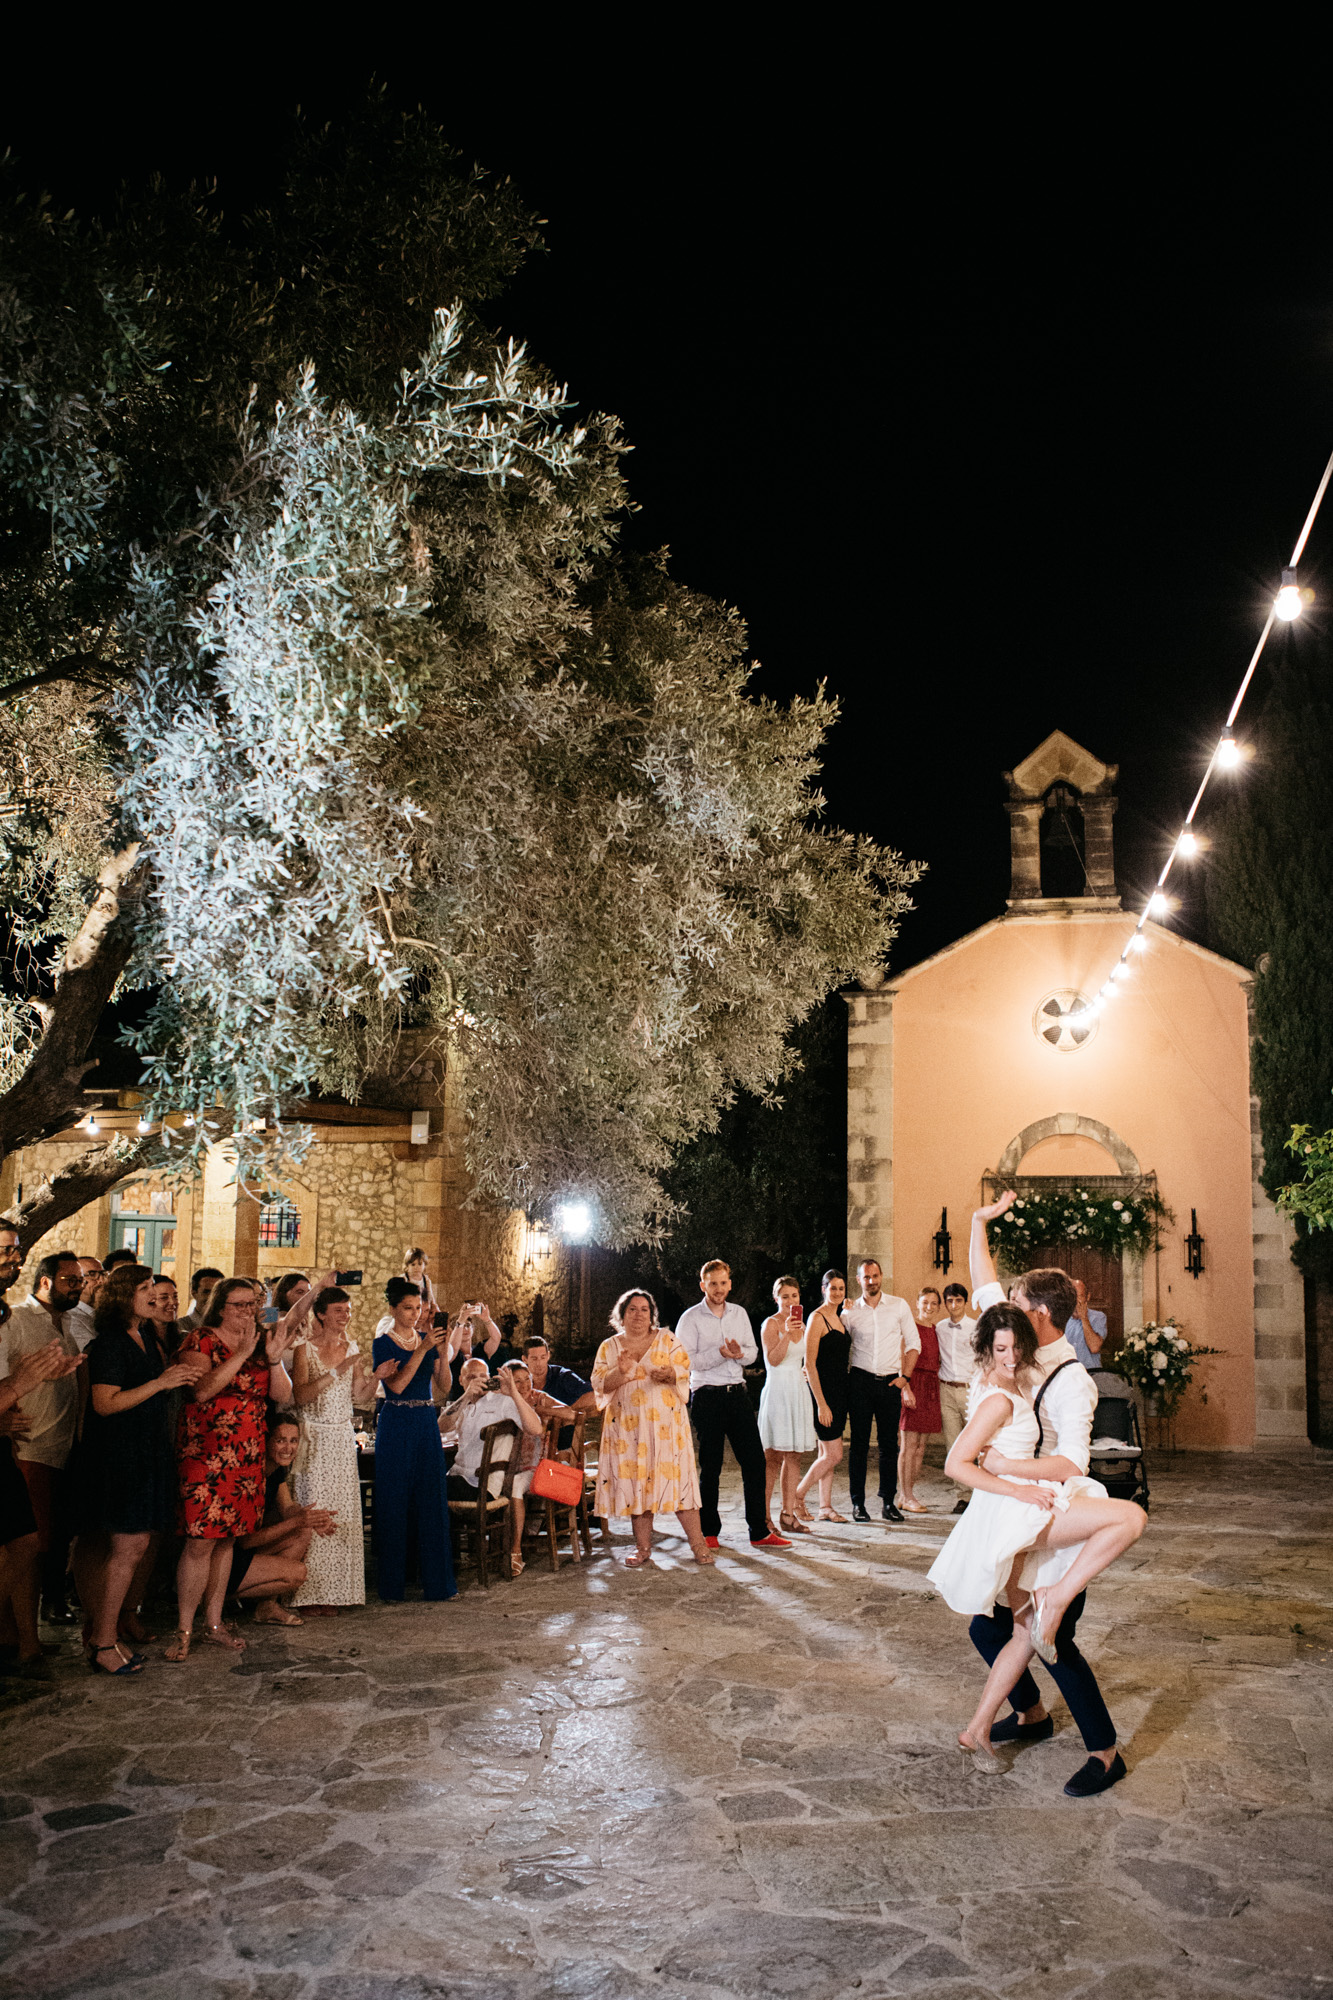 Vibrant fun-soaked wedding reception at Grecotel Agreco Farm Crete Greece.